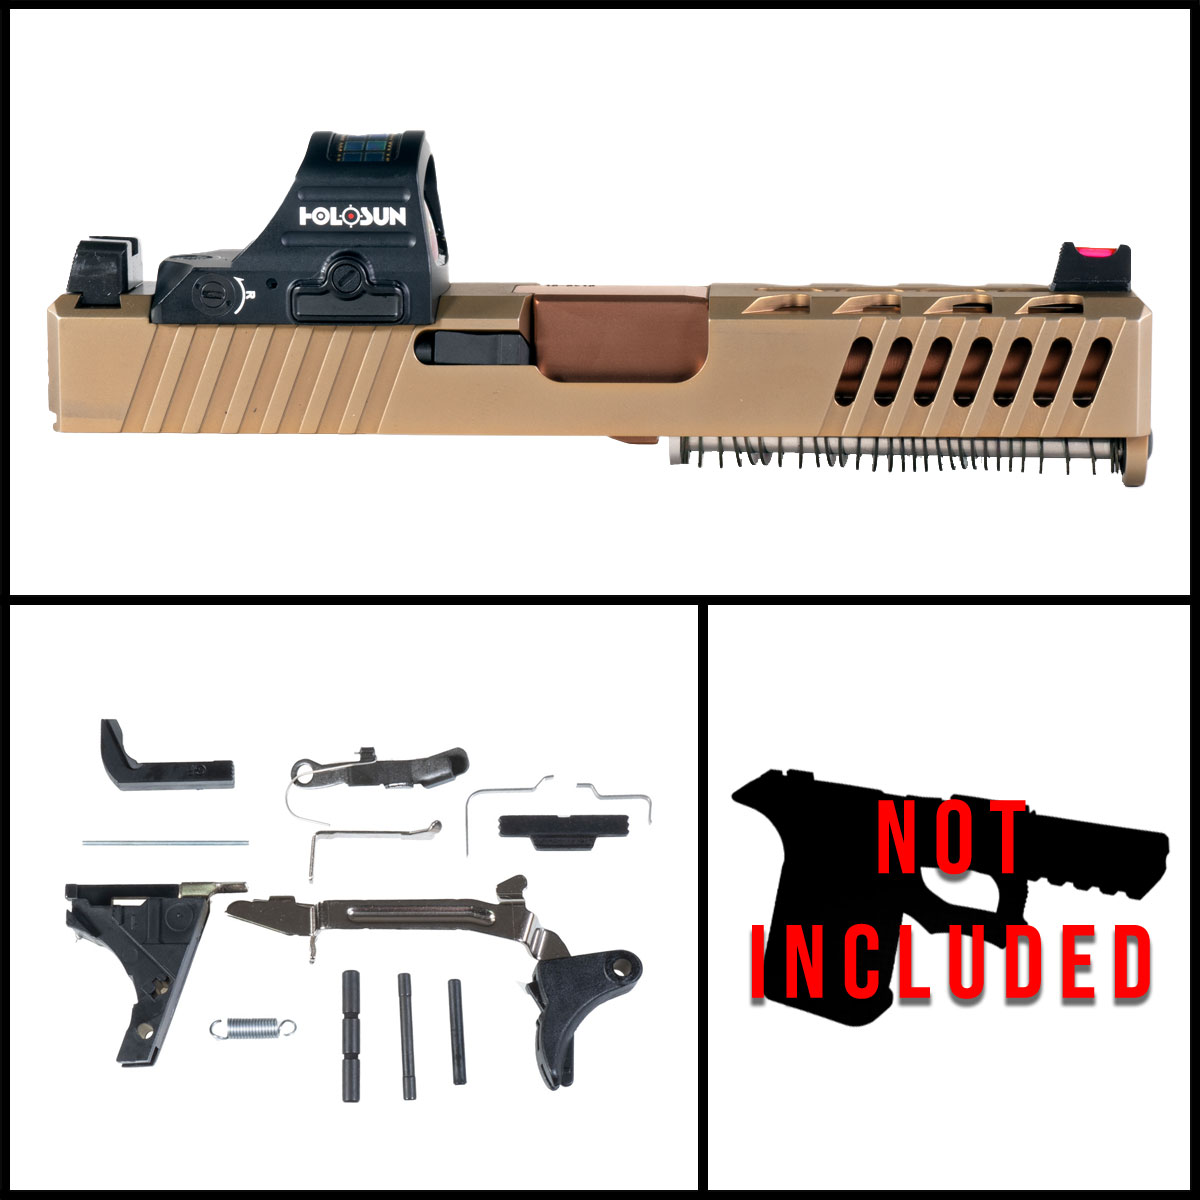 DTT 'Element 29' 9mm Full Pistol Build Kit (Everything Minus Frame) - Glock 19 Compatible